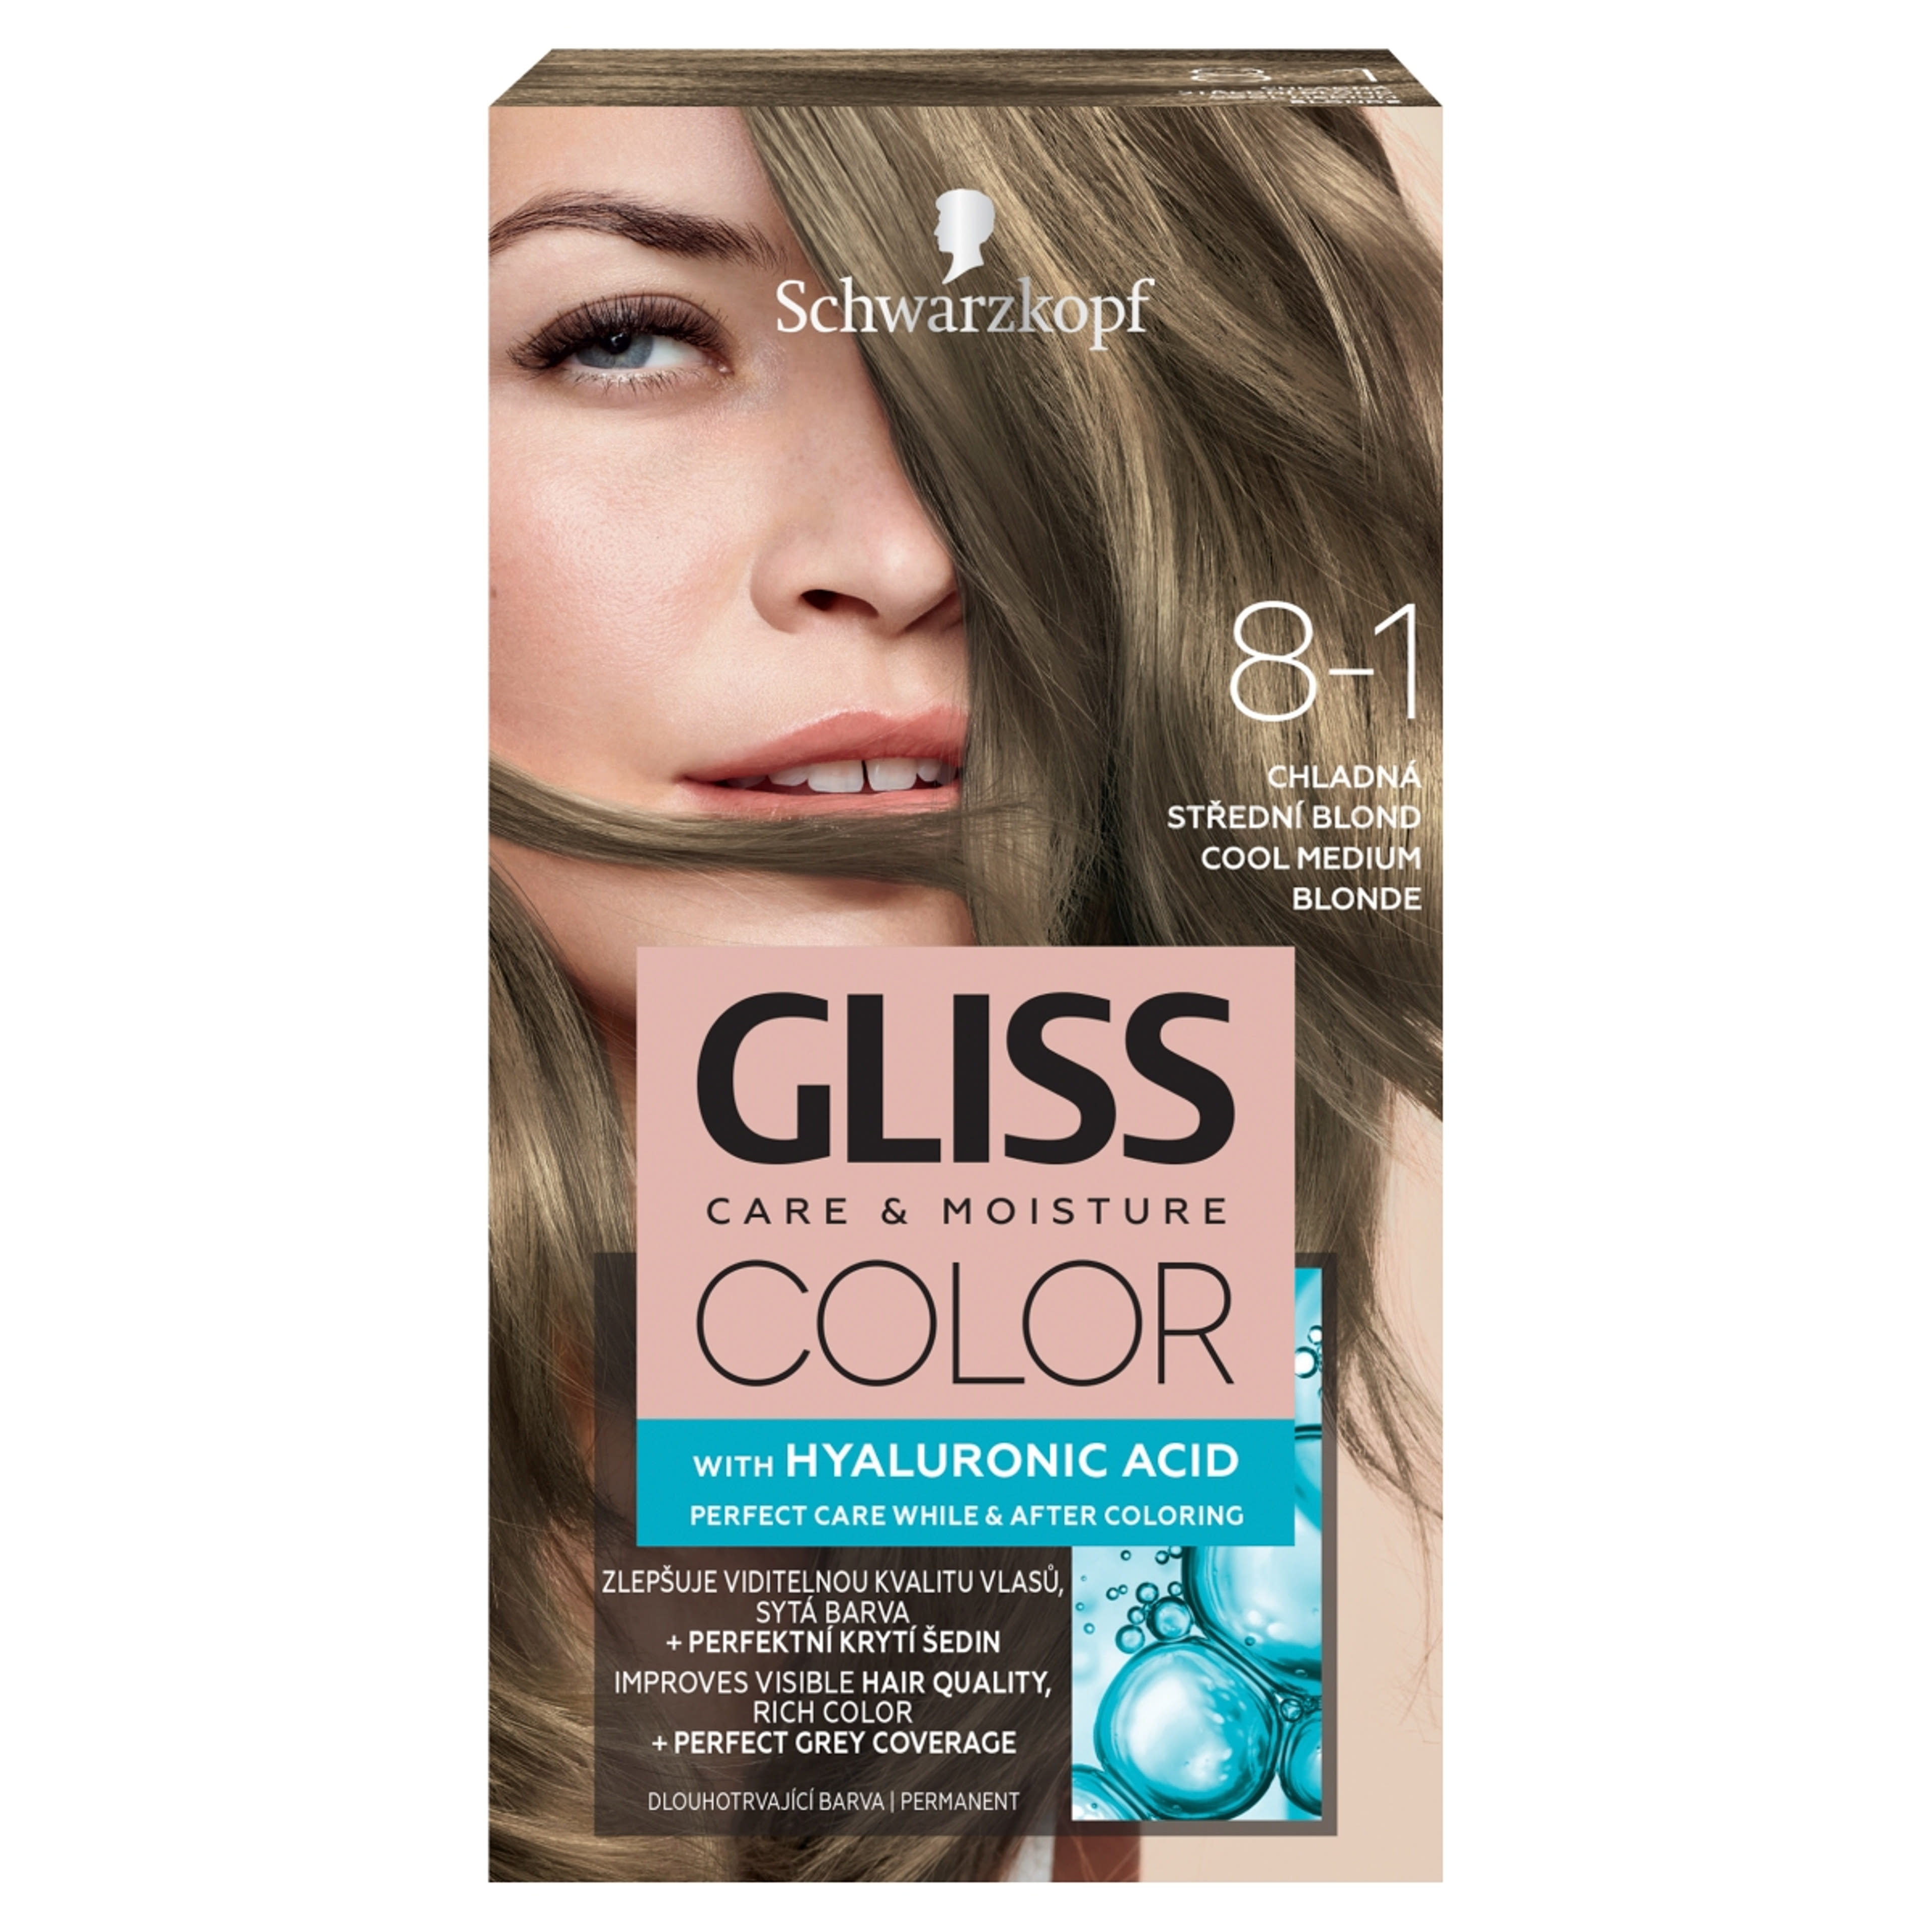 Gliss Color tartós hajfesték 8-1 Hűvös középszőke - 1 db-1